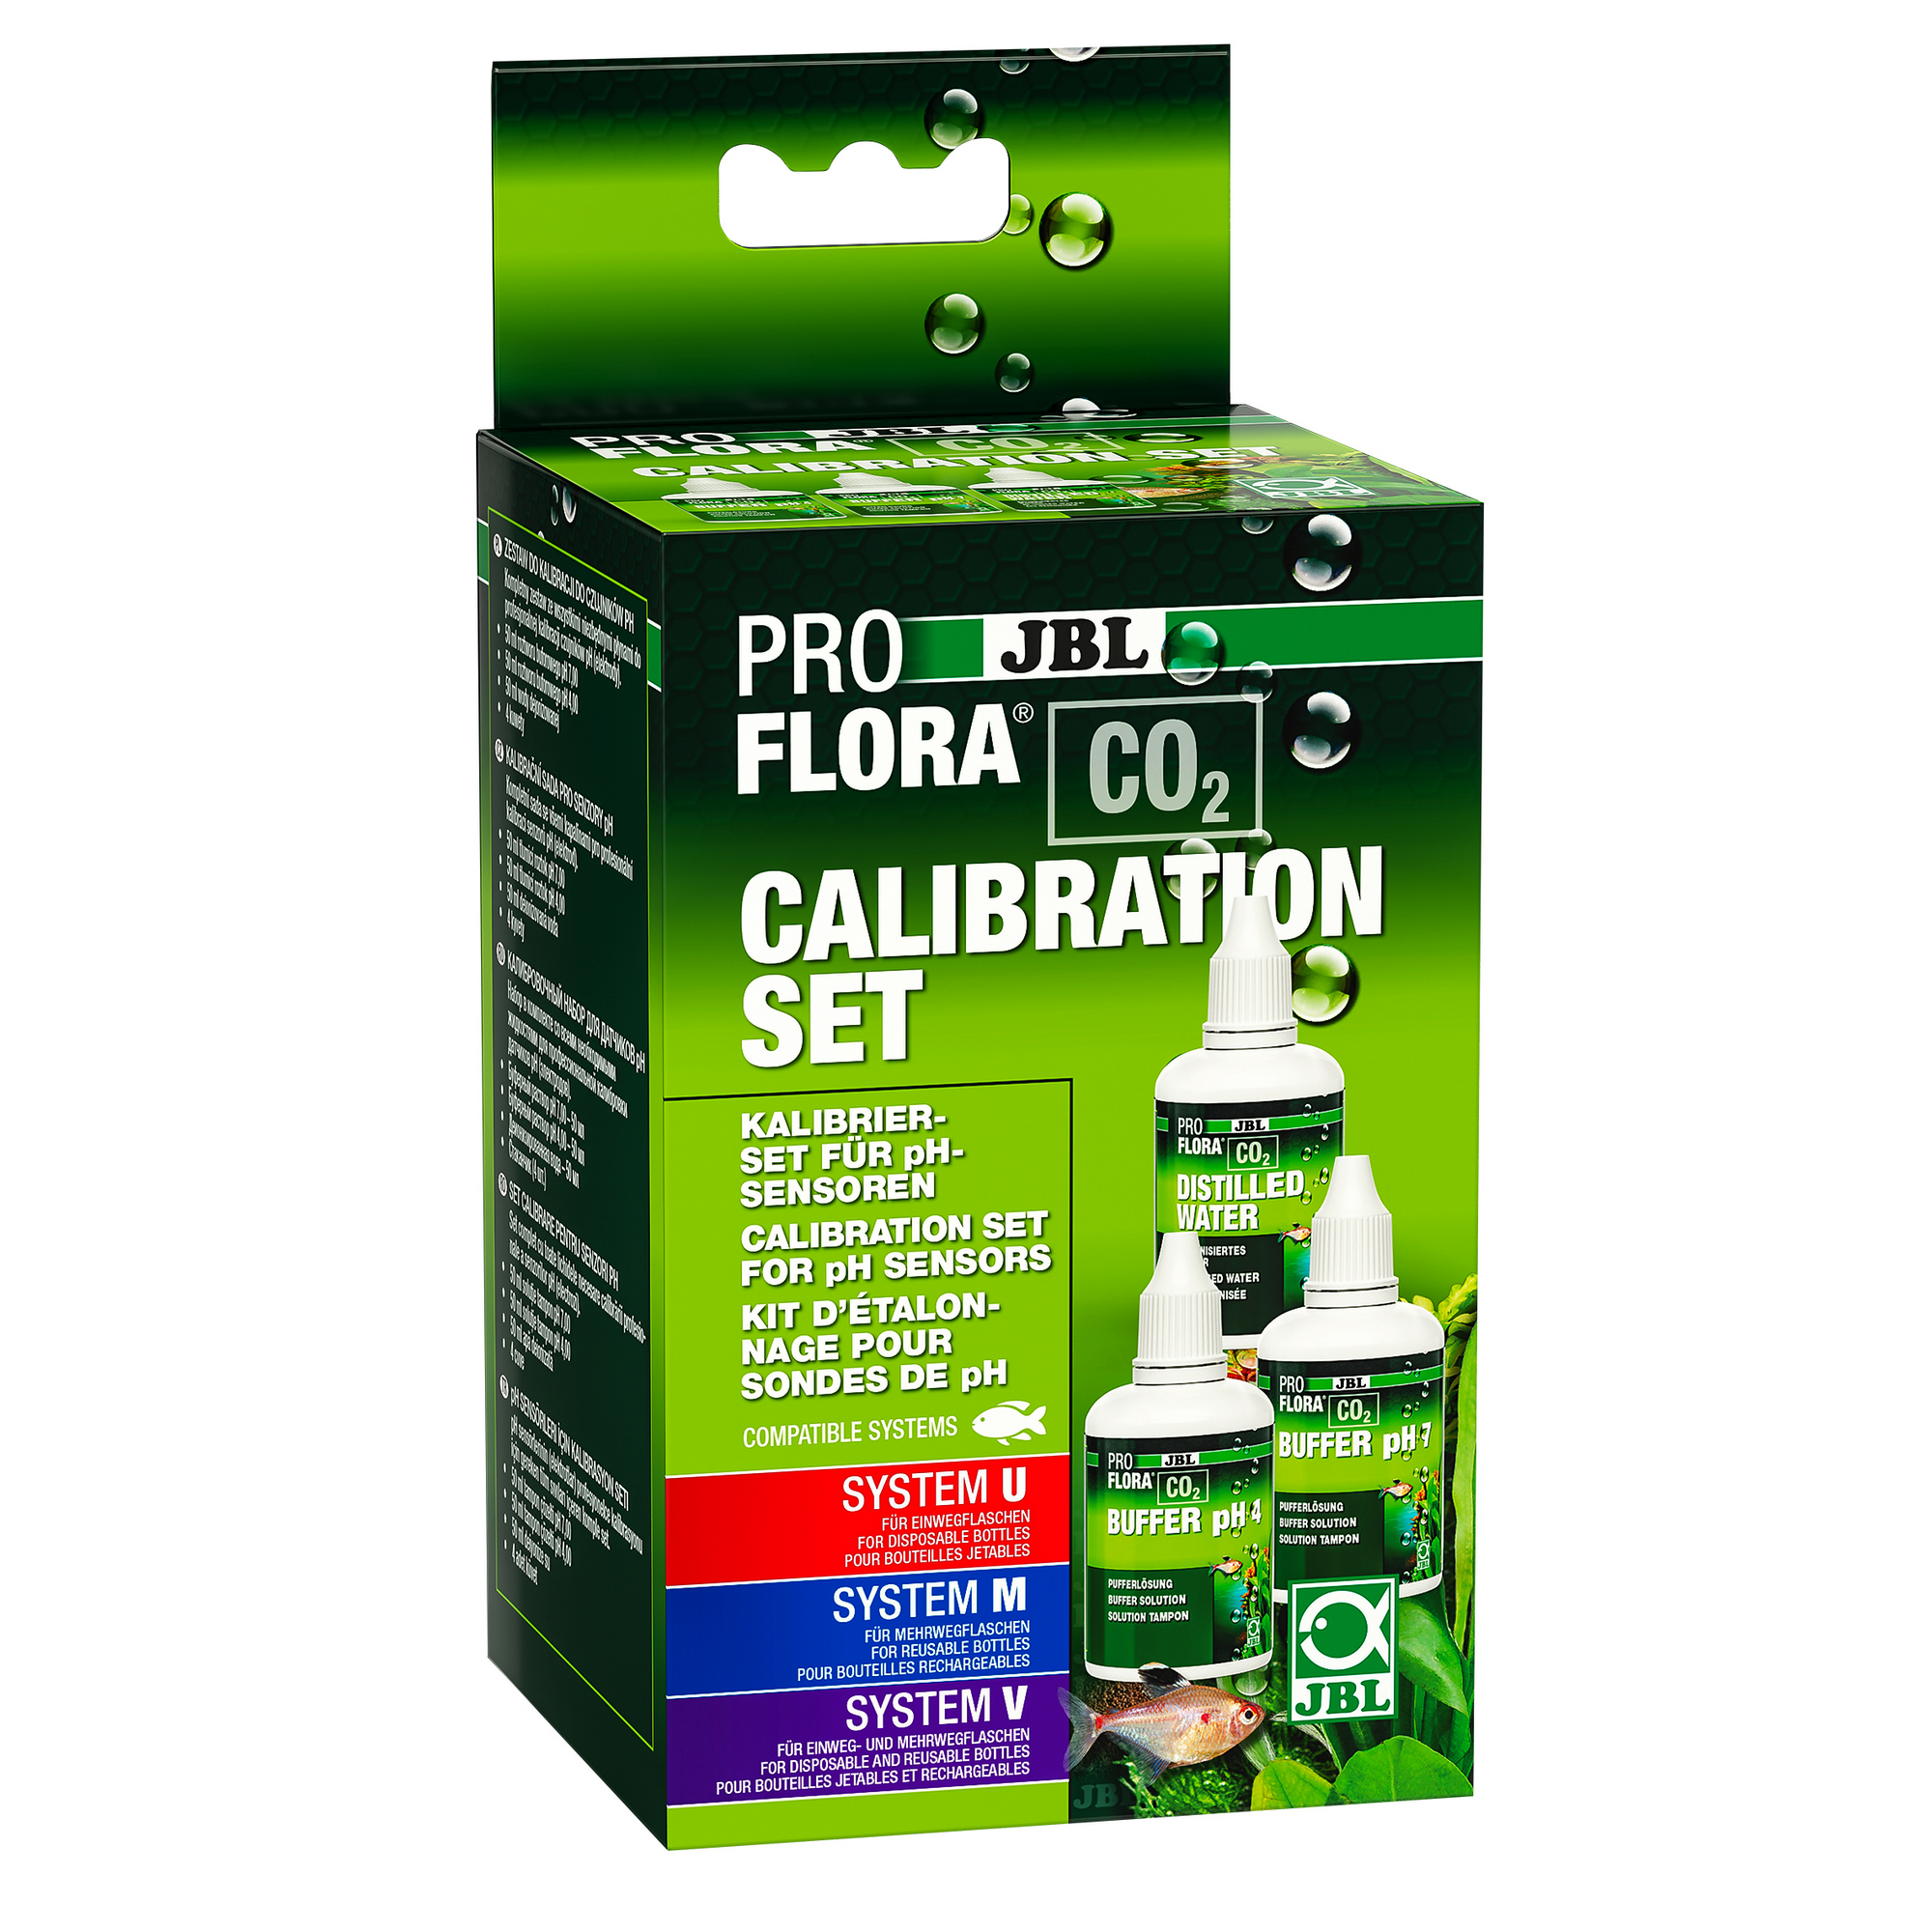 Kalibrierset 'Proflora' für pH-Elektroden + product picture